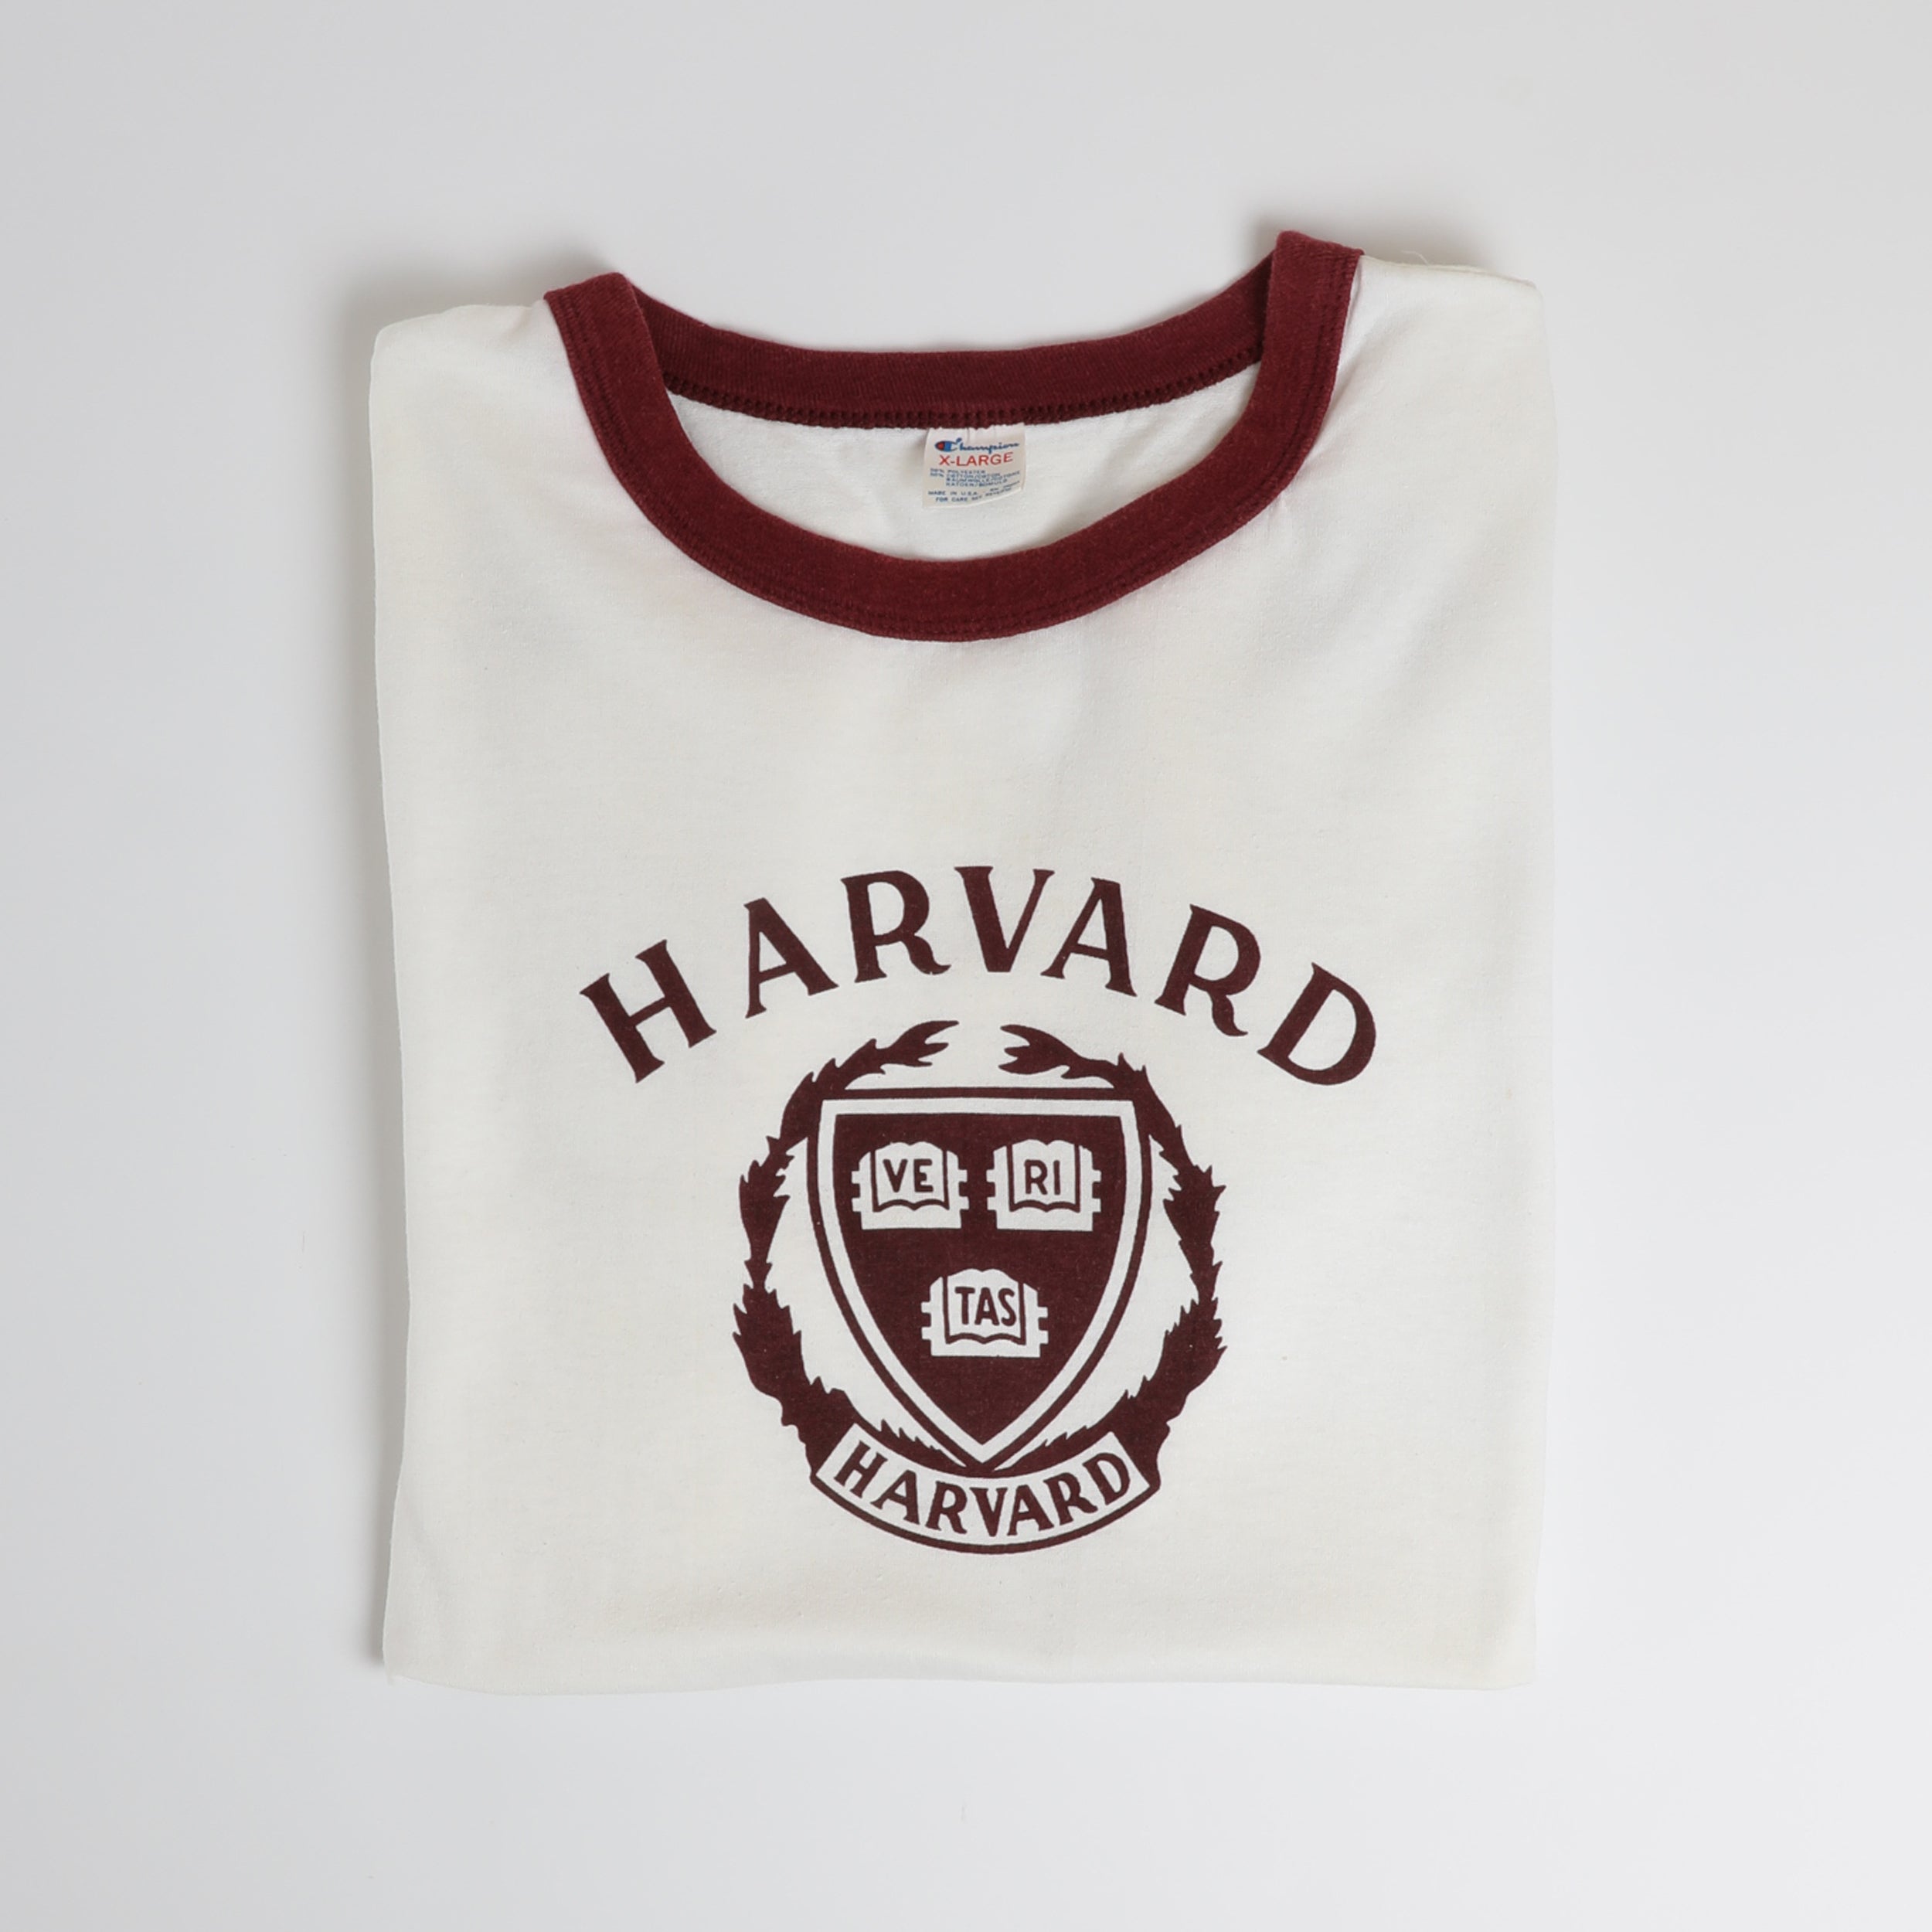 Vintage 80's Harvard Ringer T-Shirt - Medium